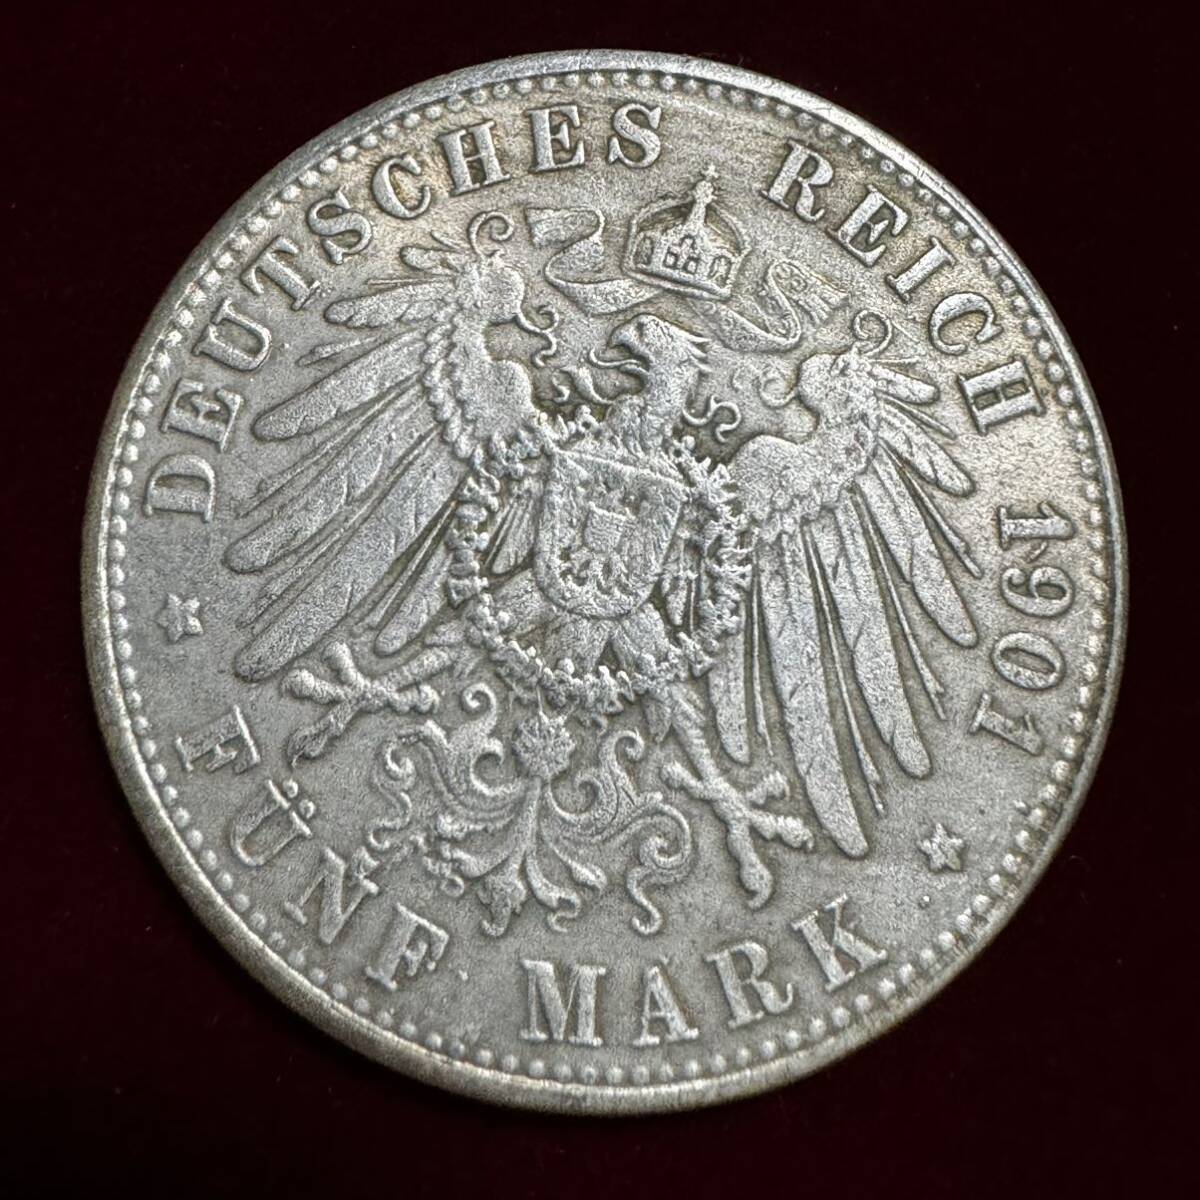 ドイツ 硬貨 古銭 プロイセン王国 1901年 フリードリヒ1世 ウィリアム2世 プロイセン王国建国200周年 カンムリワシ 記念幣 コイン 銀貨 の画像1